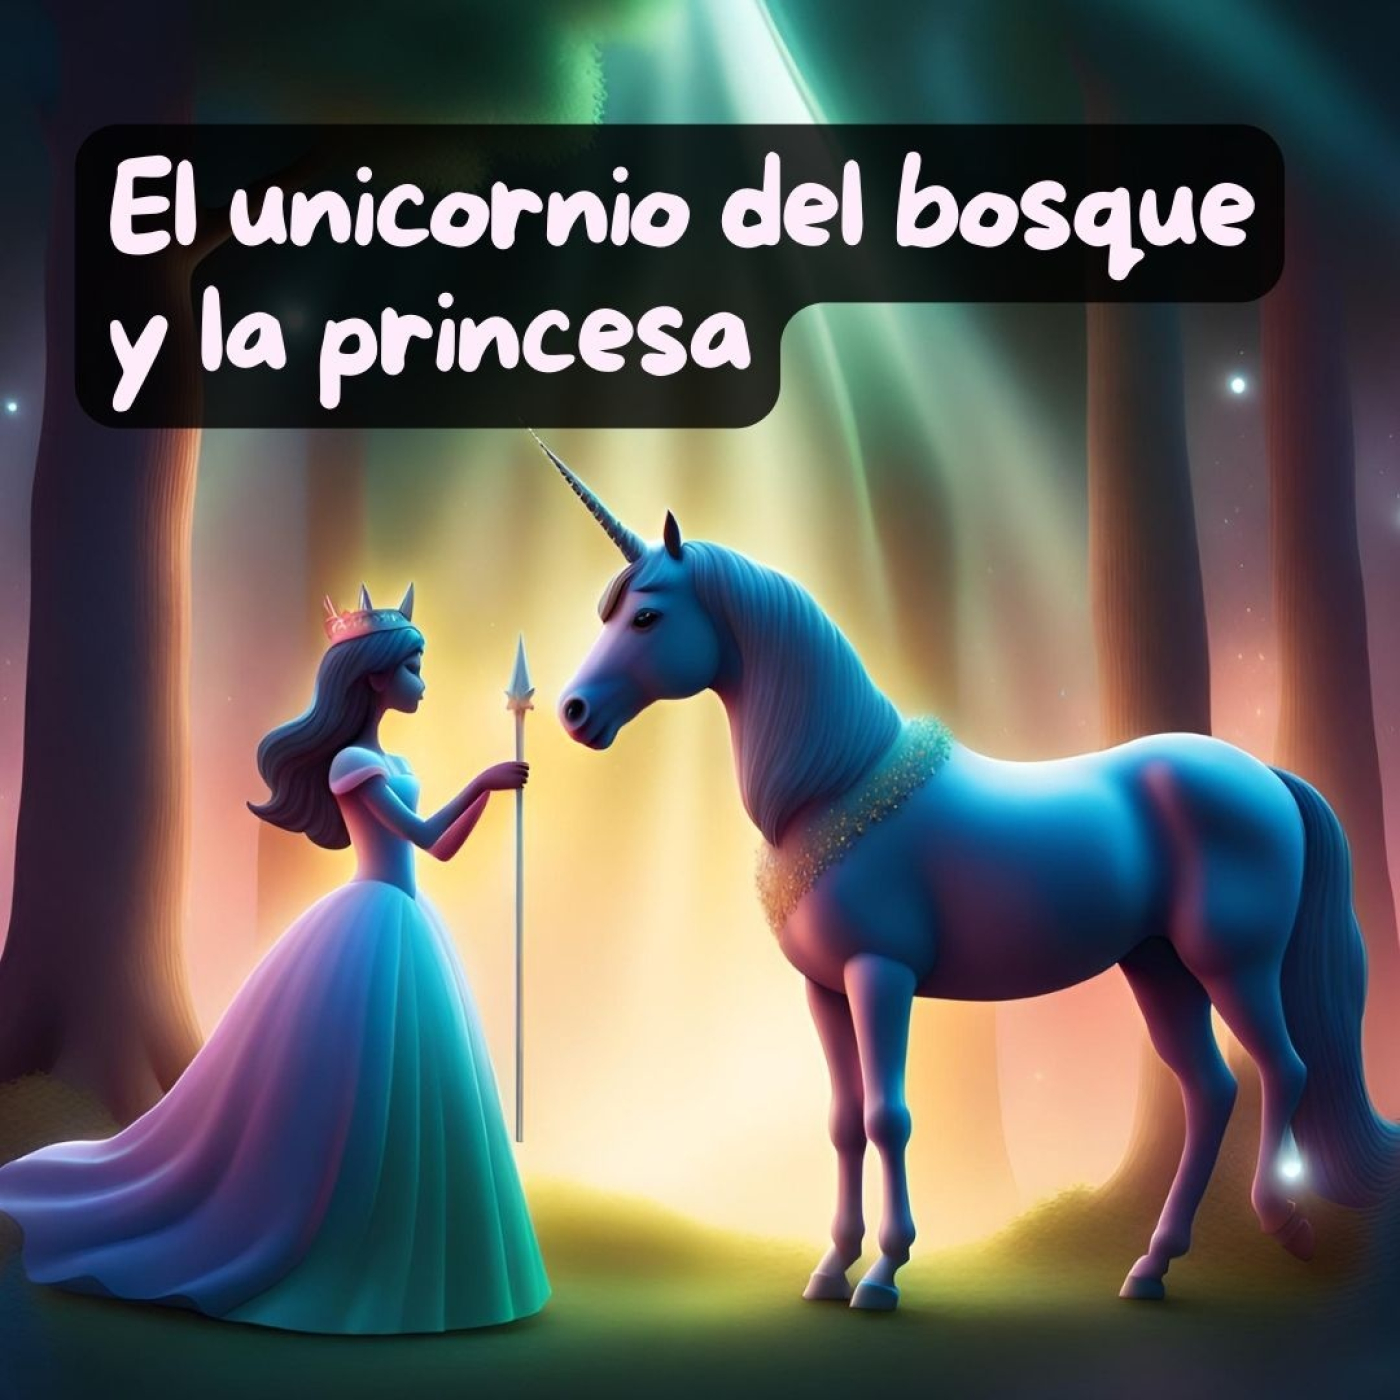 El unicornio del bosque y la princesa